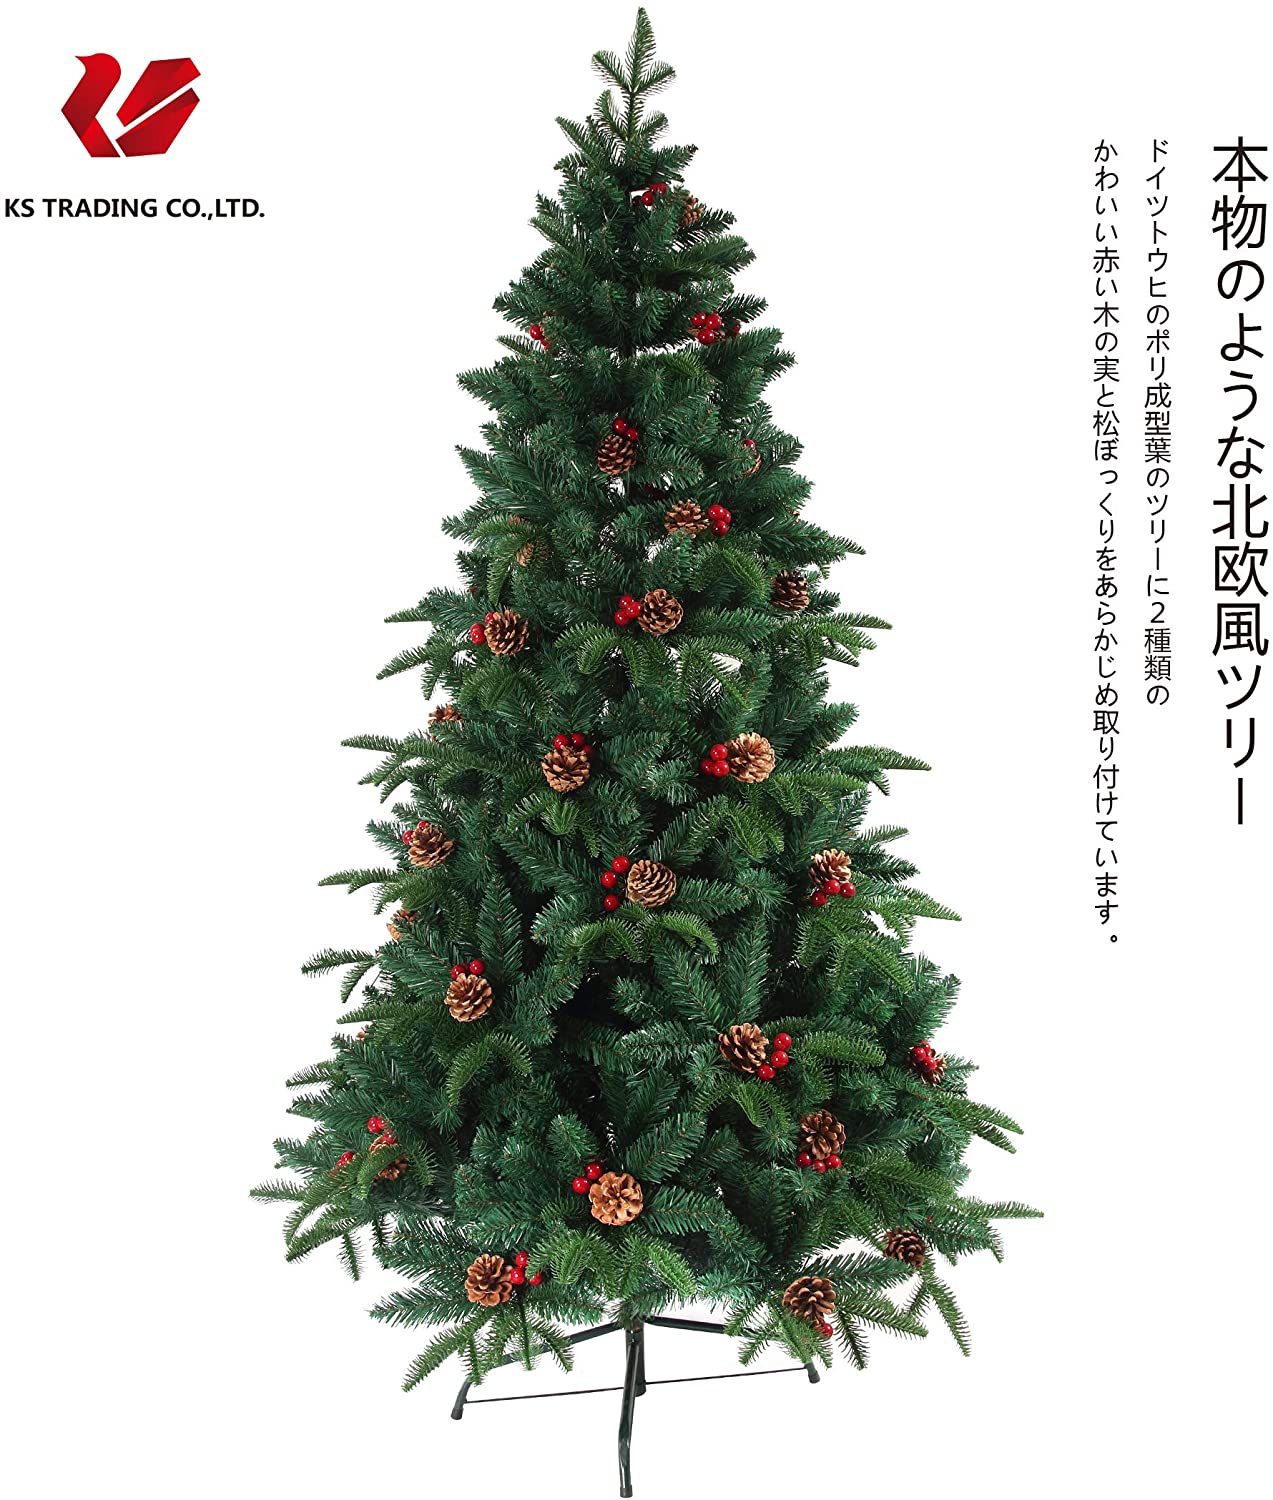 クリスマスツリー 枝大幅増量タイプ 松ぼっくり付き、赤い実付き、北欧 